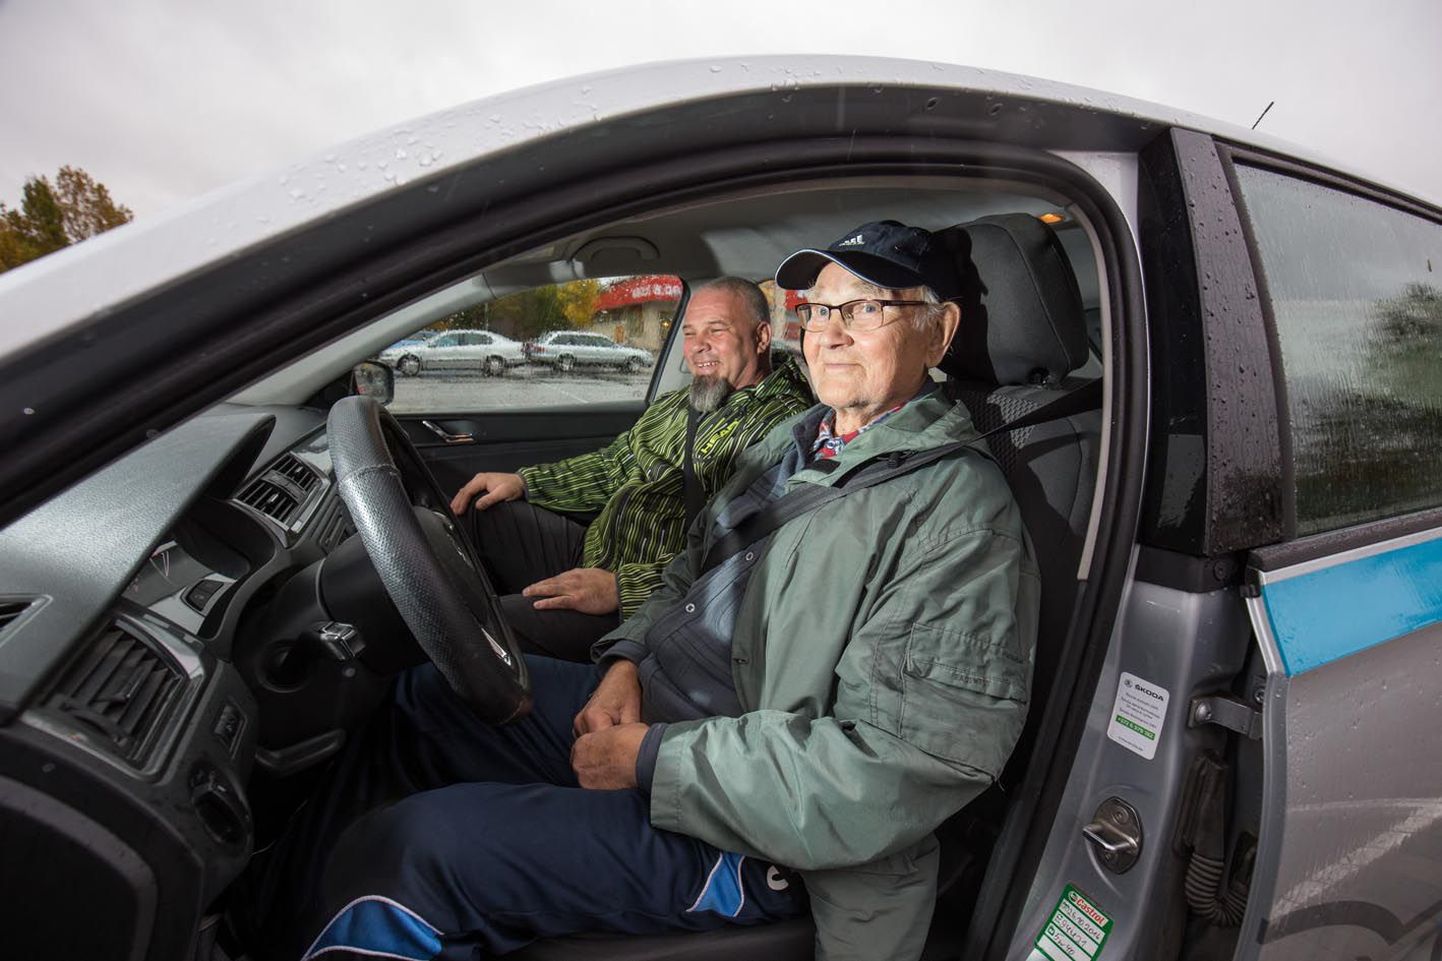 Jaan Salur saab sõiduõpetaja Toivo Õnneleiult natuke noomida, et ei märka ajutisi liiklusmärke ja kaldub sõites veidi oma sõidurajalt välja.